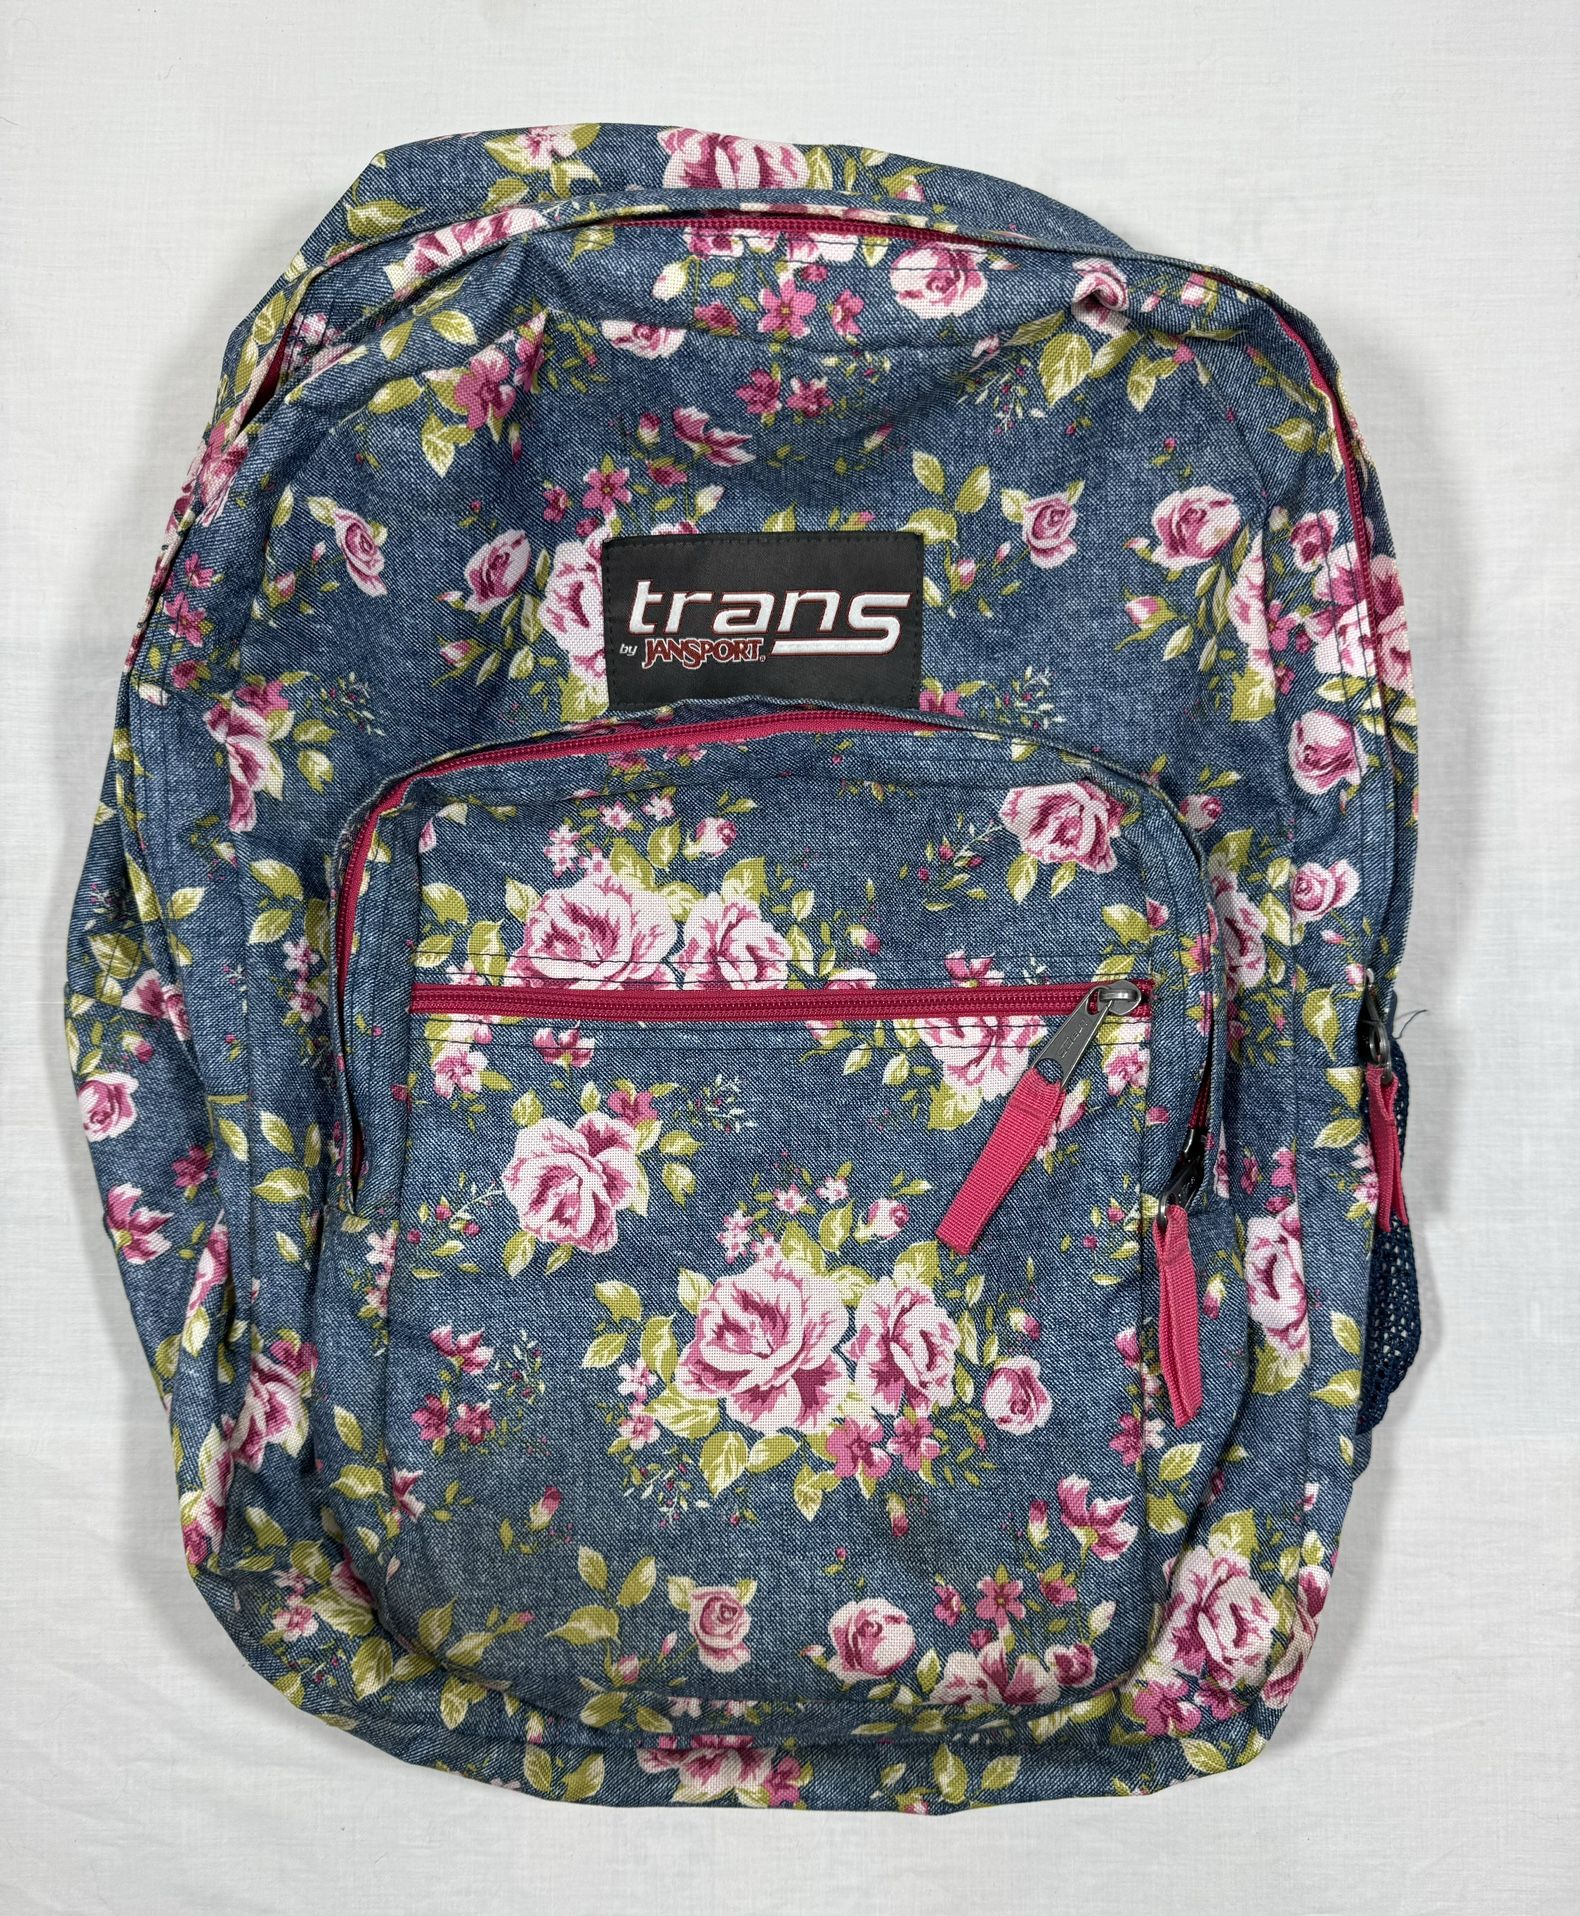 Jansport Backpack Bag